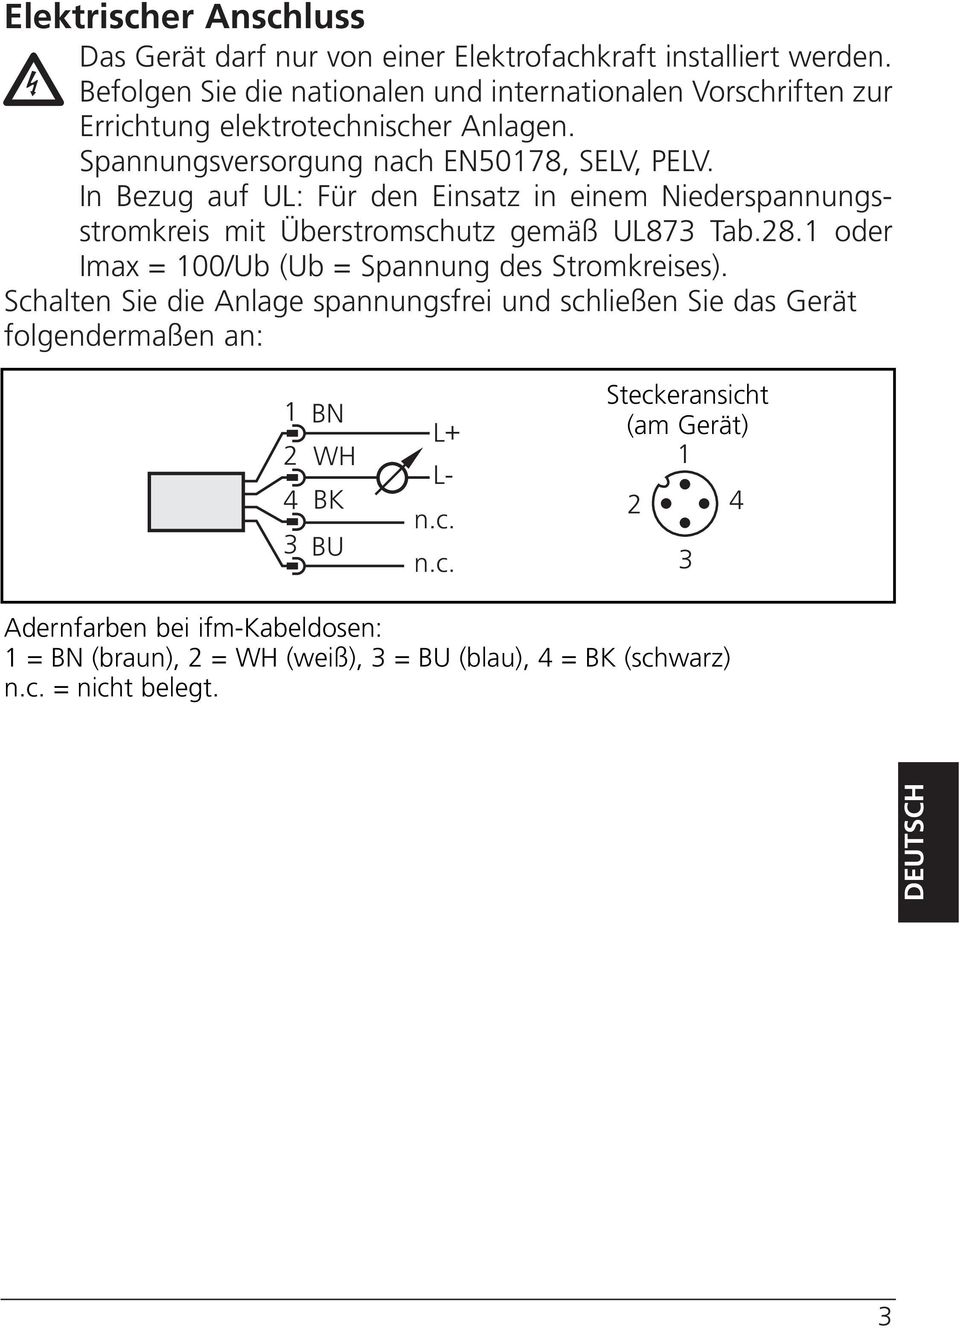 In Bezug auf UL: Für den Einsatz in einem Niederspannungsstromkreis mit Überstromschutz gemäß UL87 Tab.28. oder Imax = 00/Ub (Ub = Spannung des Stromkreises).